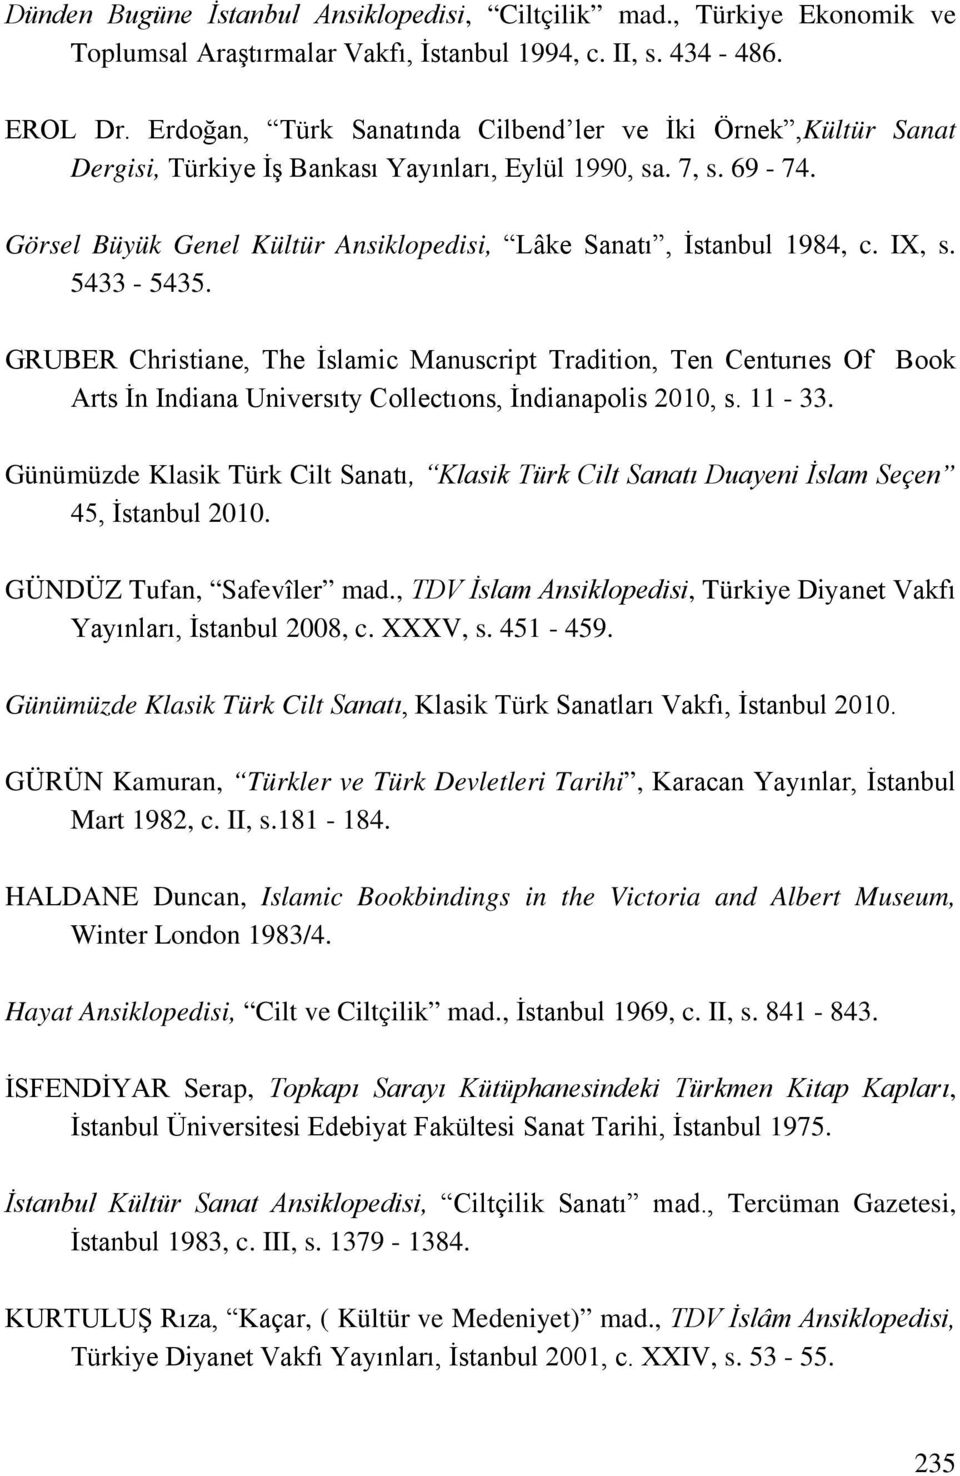 Görsel Büyük Genel Kültür Ansiklopedisi, Lâke Sanatı, İstanbul 1984, c. IX, s. 5433-5435.